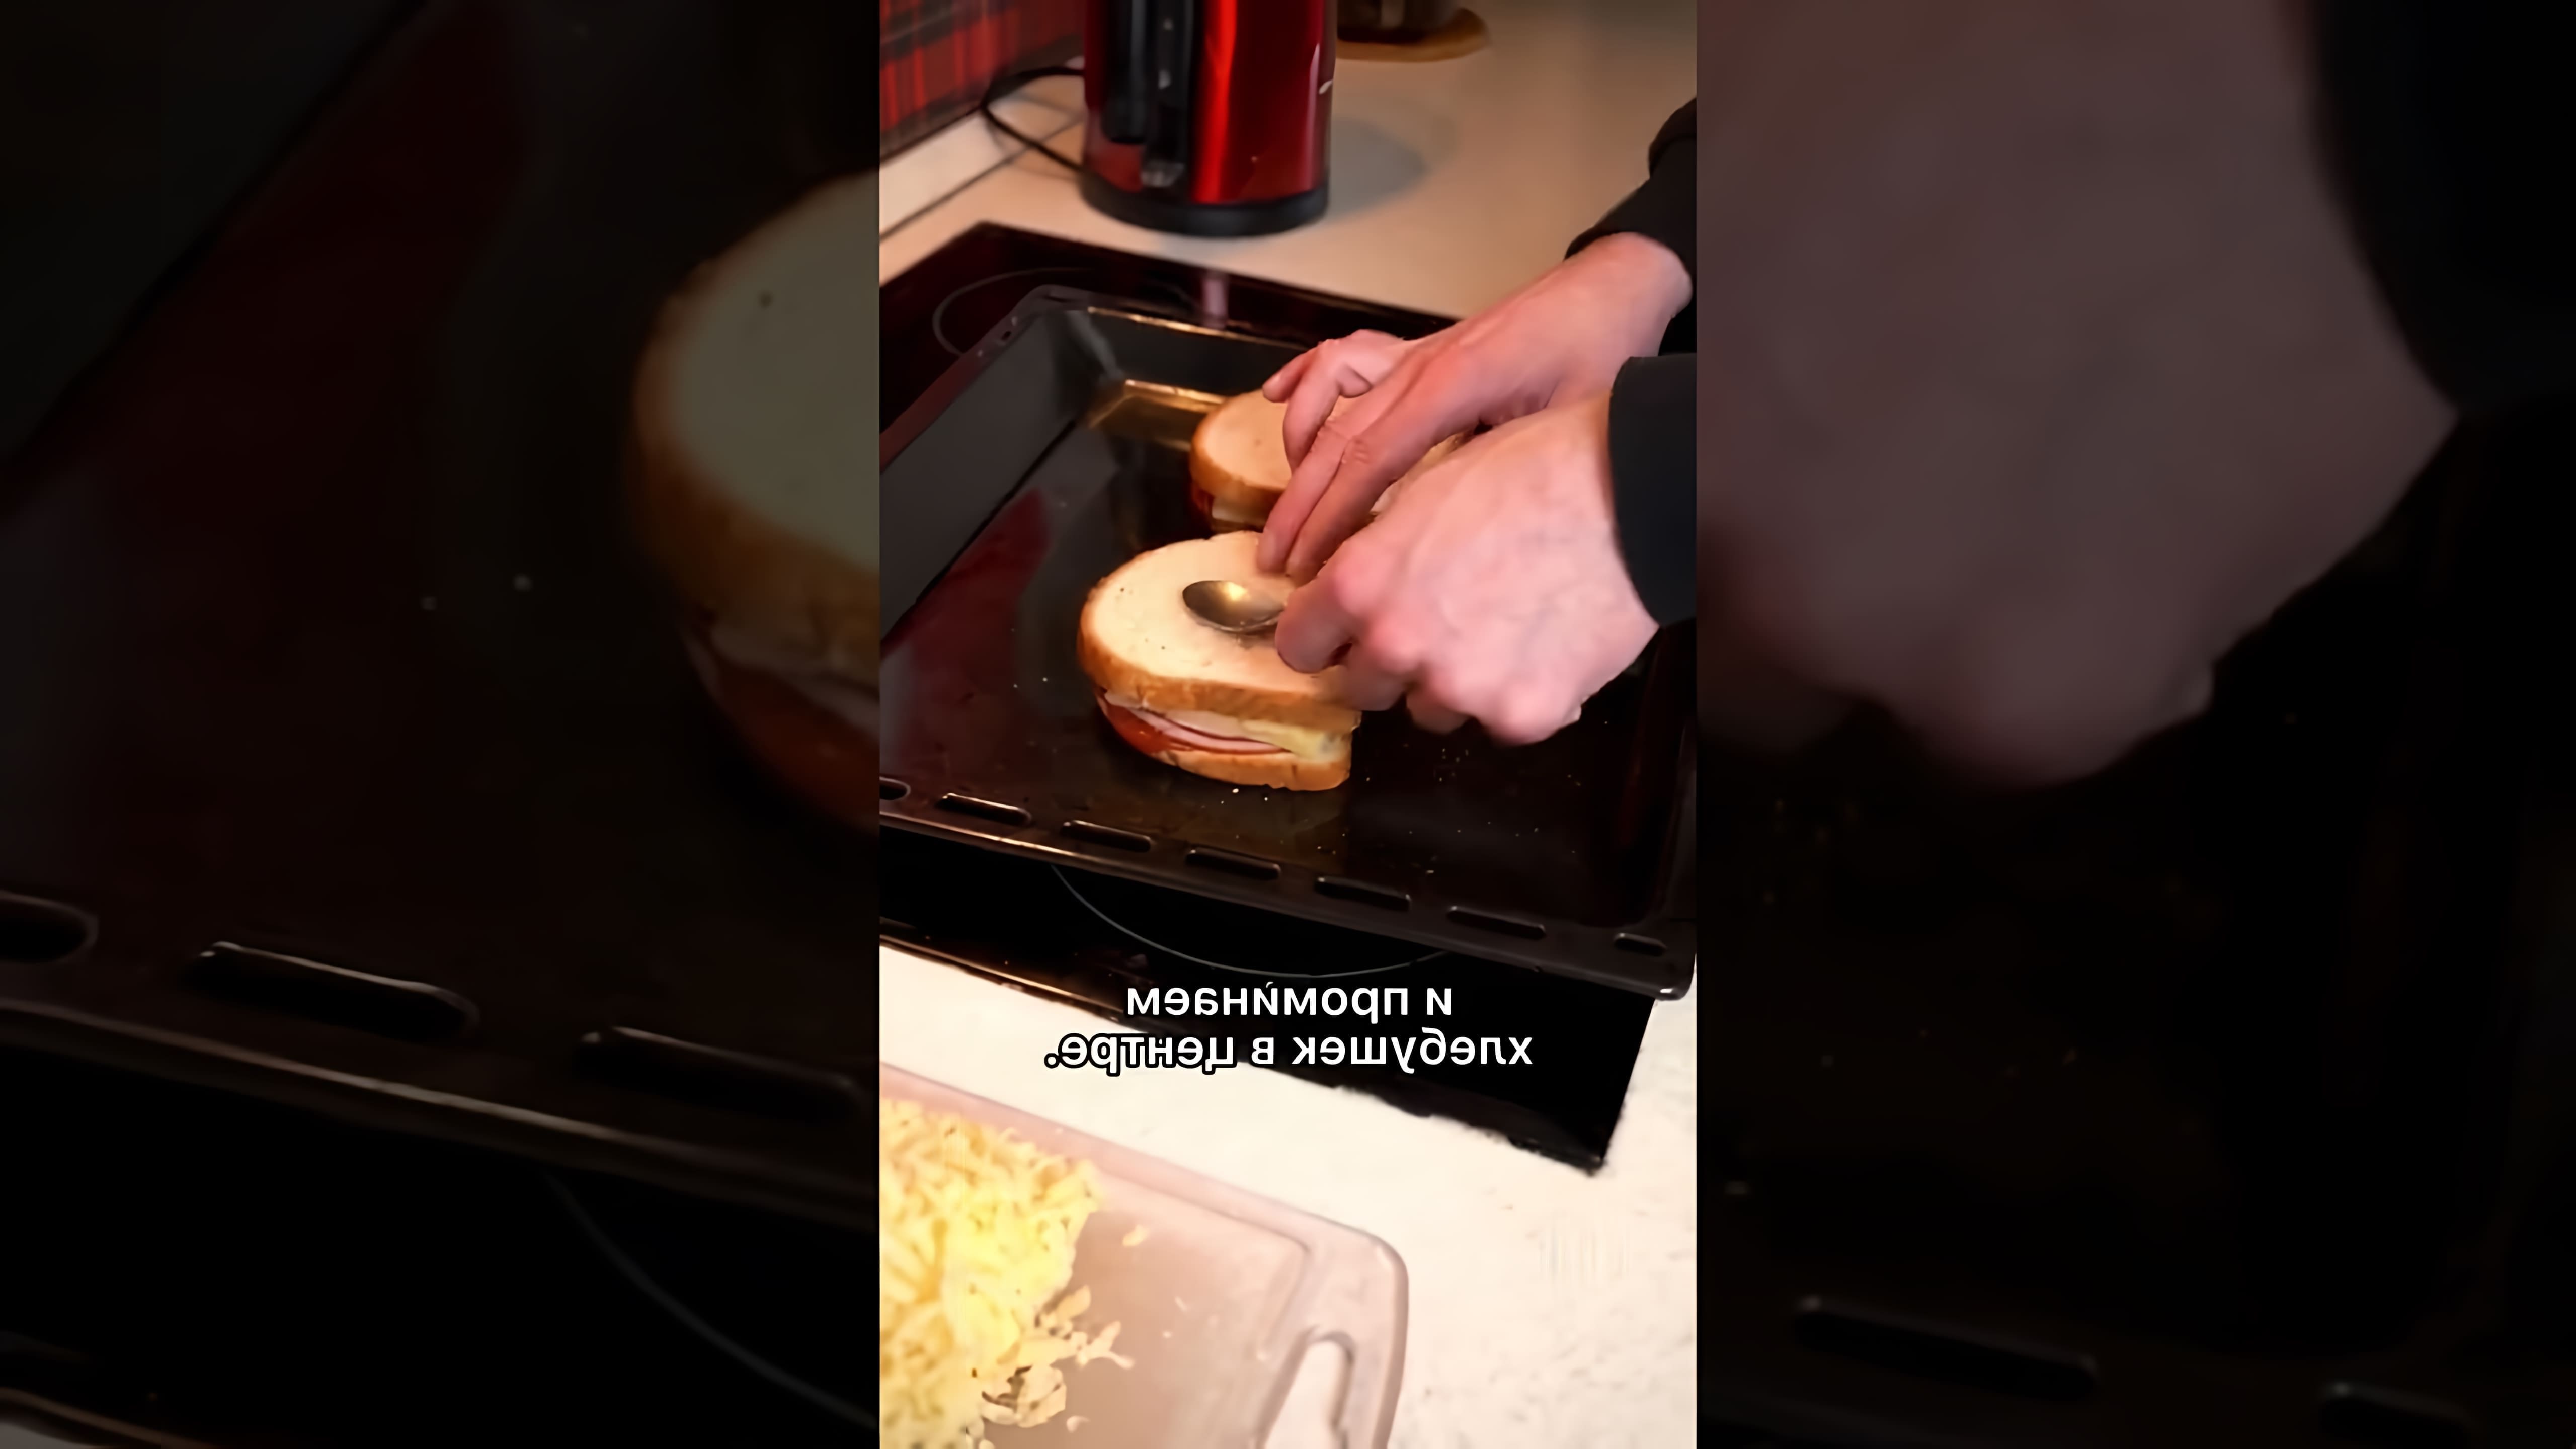 В этом видео демонстрируется рецепт приготовления горячих бутербродов с сыром, ветчиной и яйцом